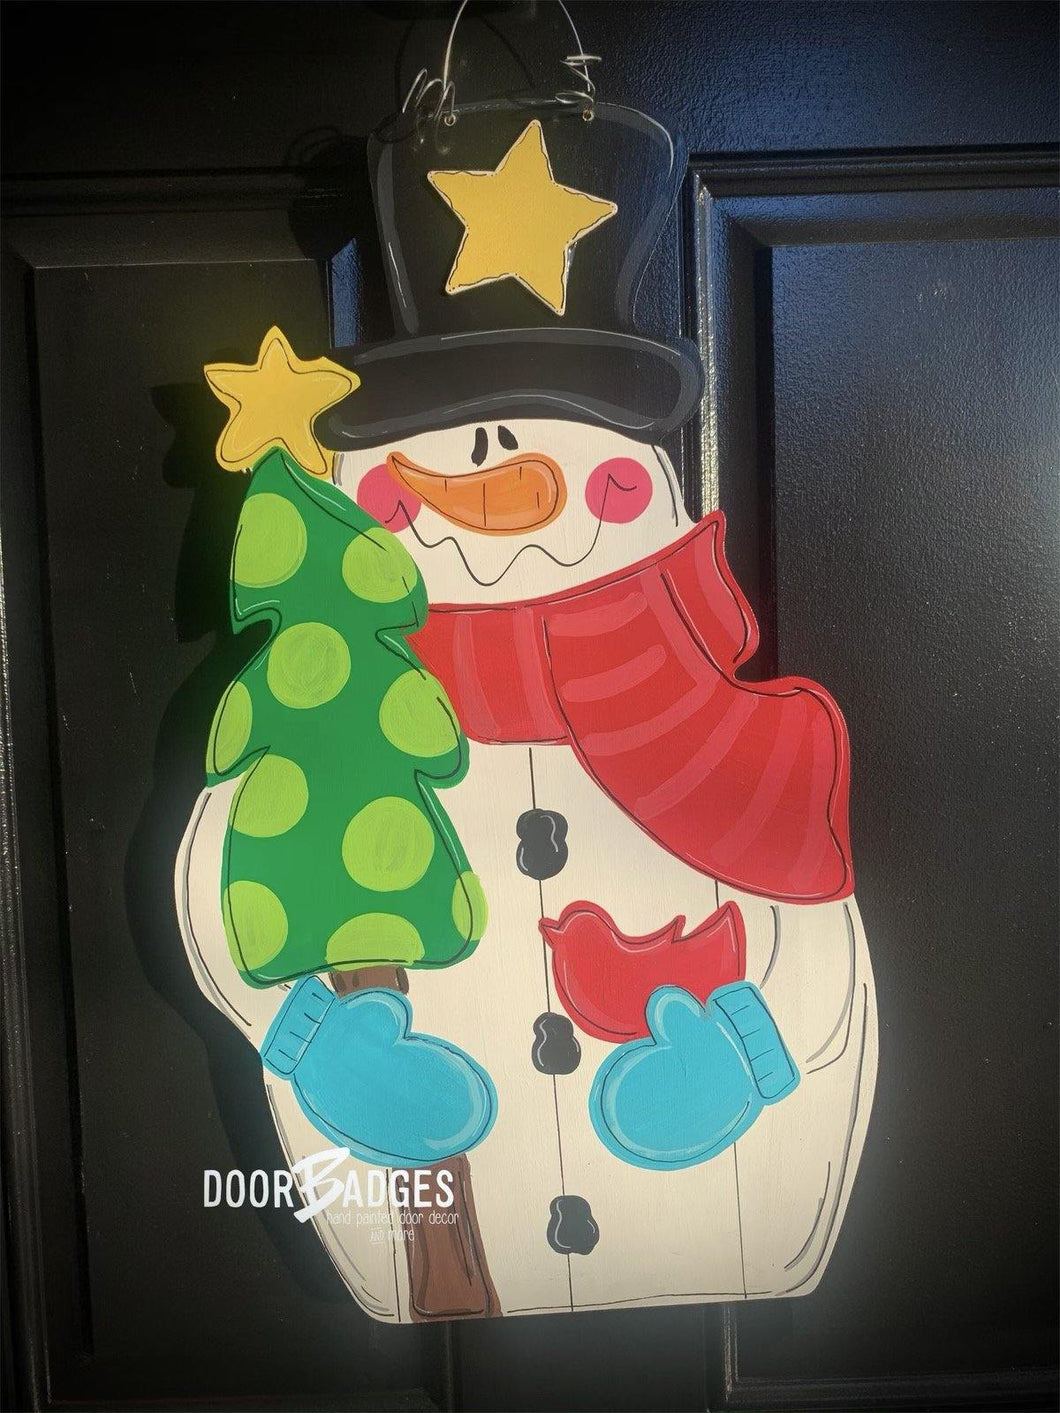 Snowman with Tree Door Hanger - Winter Door Decoration - DoorBadges